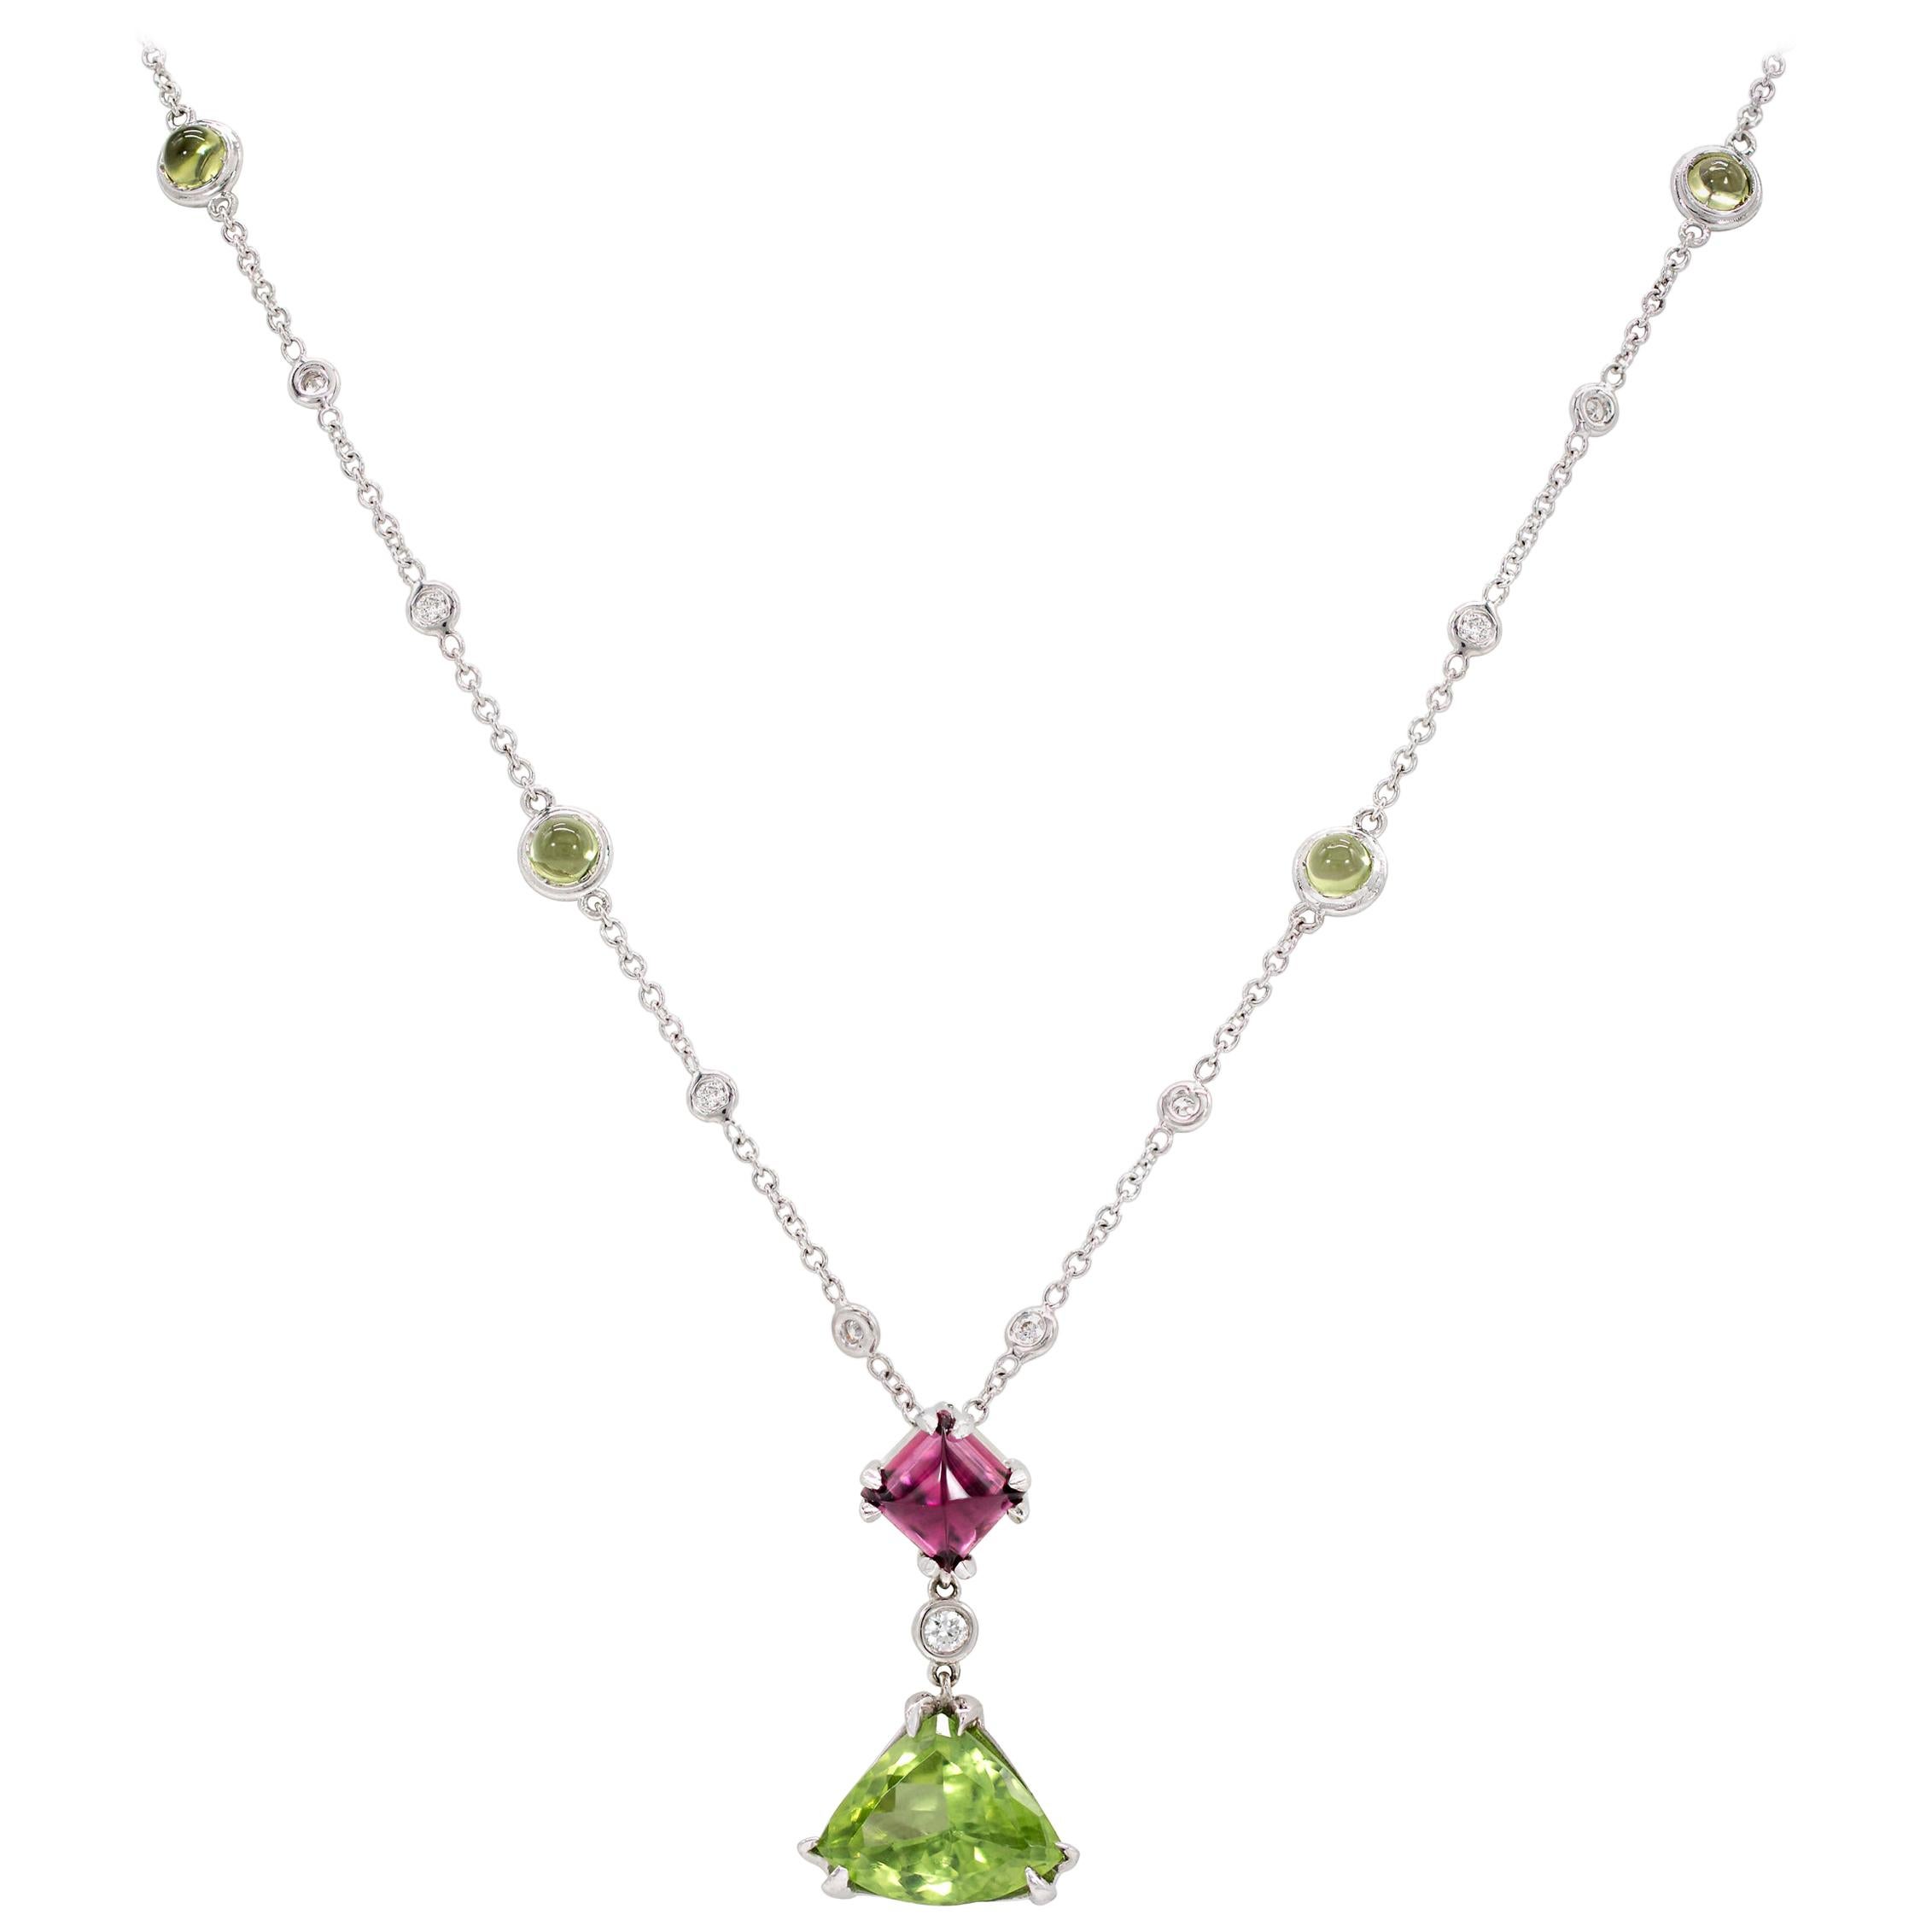 Halskette mit 5,57 Karat Zuckerhut Rubellit Turmalin, Peridot und Diamant in 18K